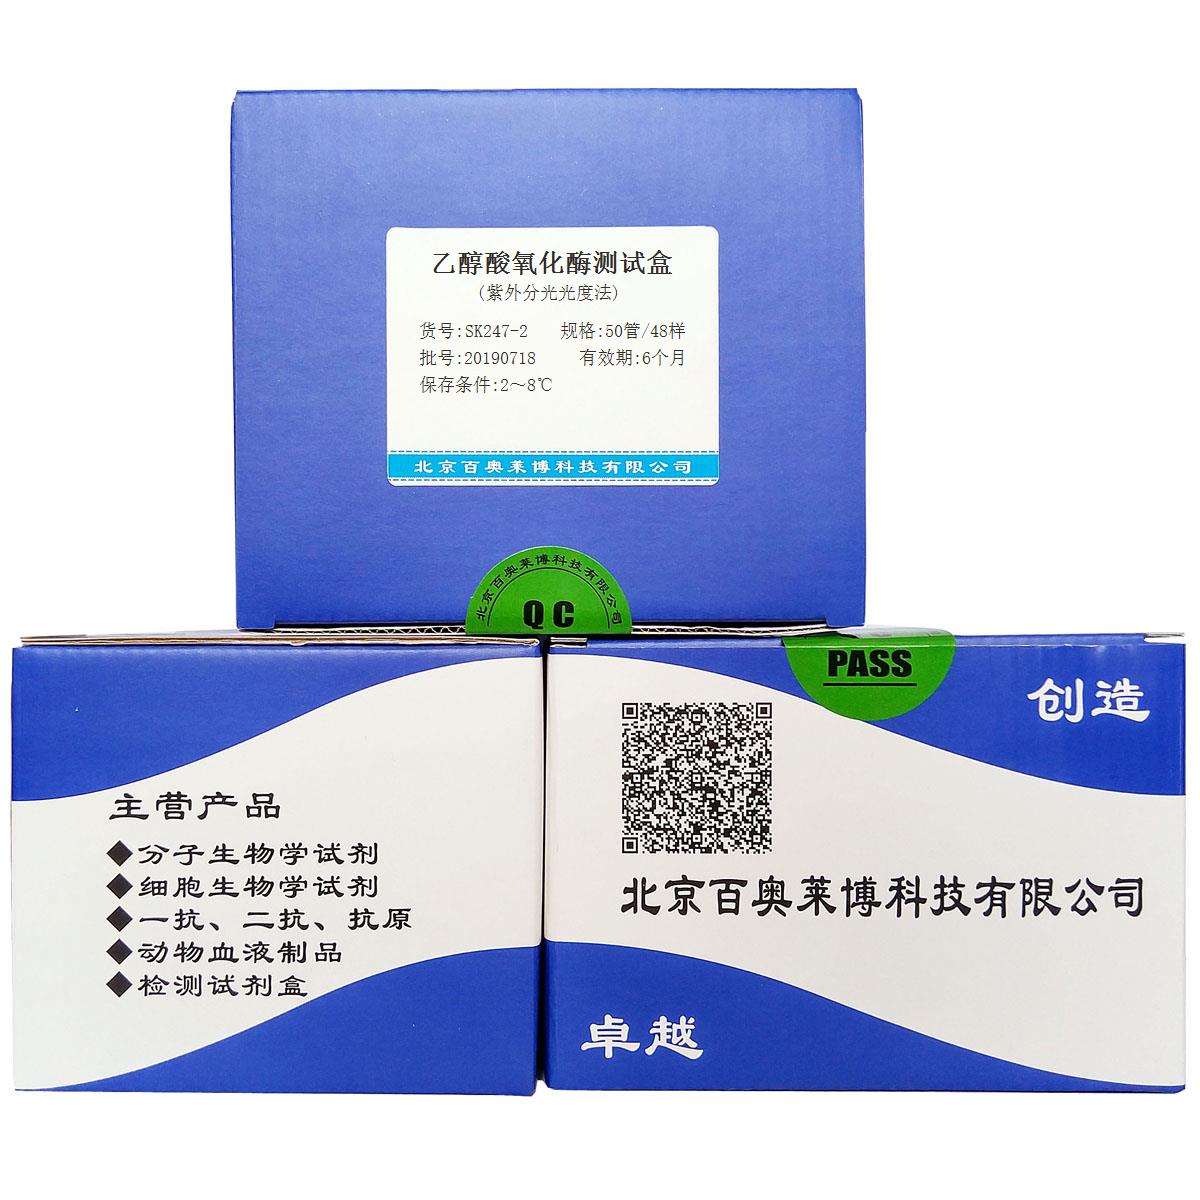 乙醇酸氧化酶测试盒(紫外分光光度法)价格